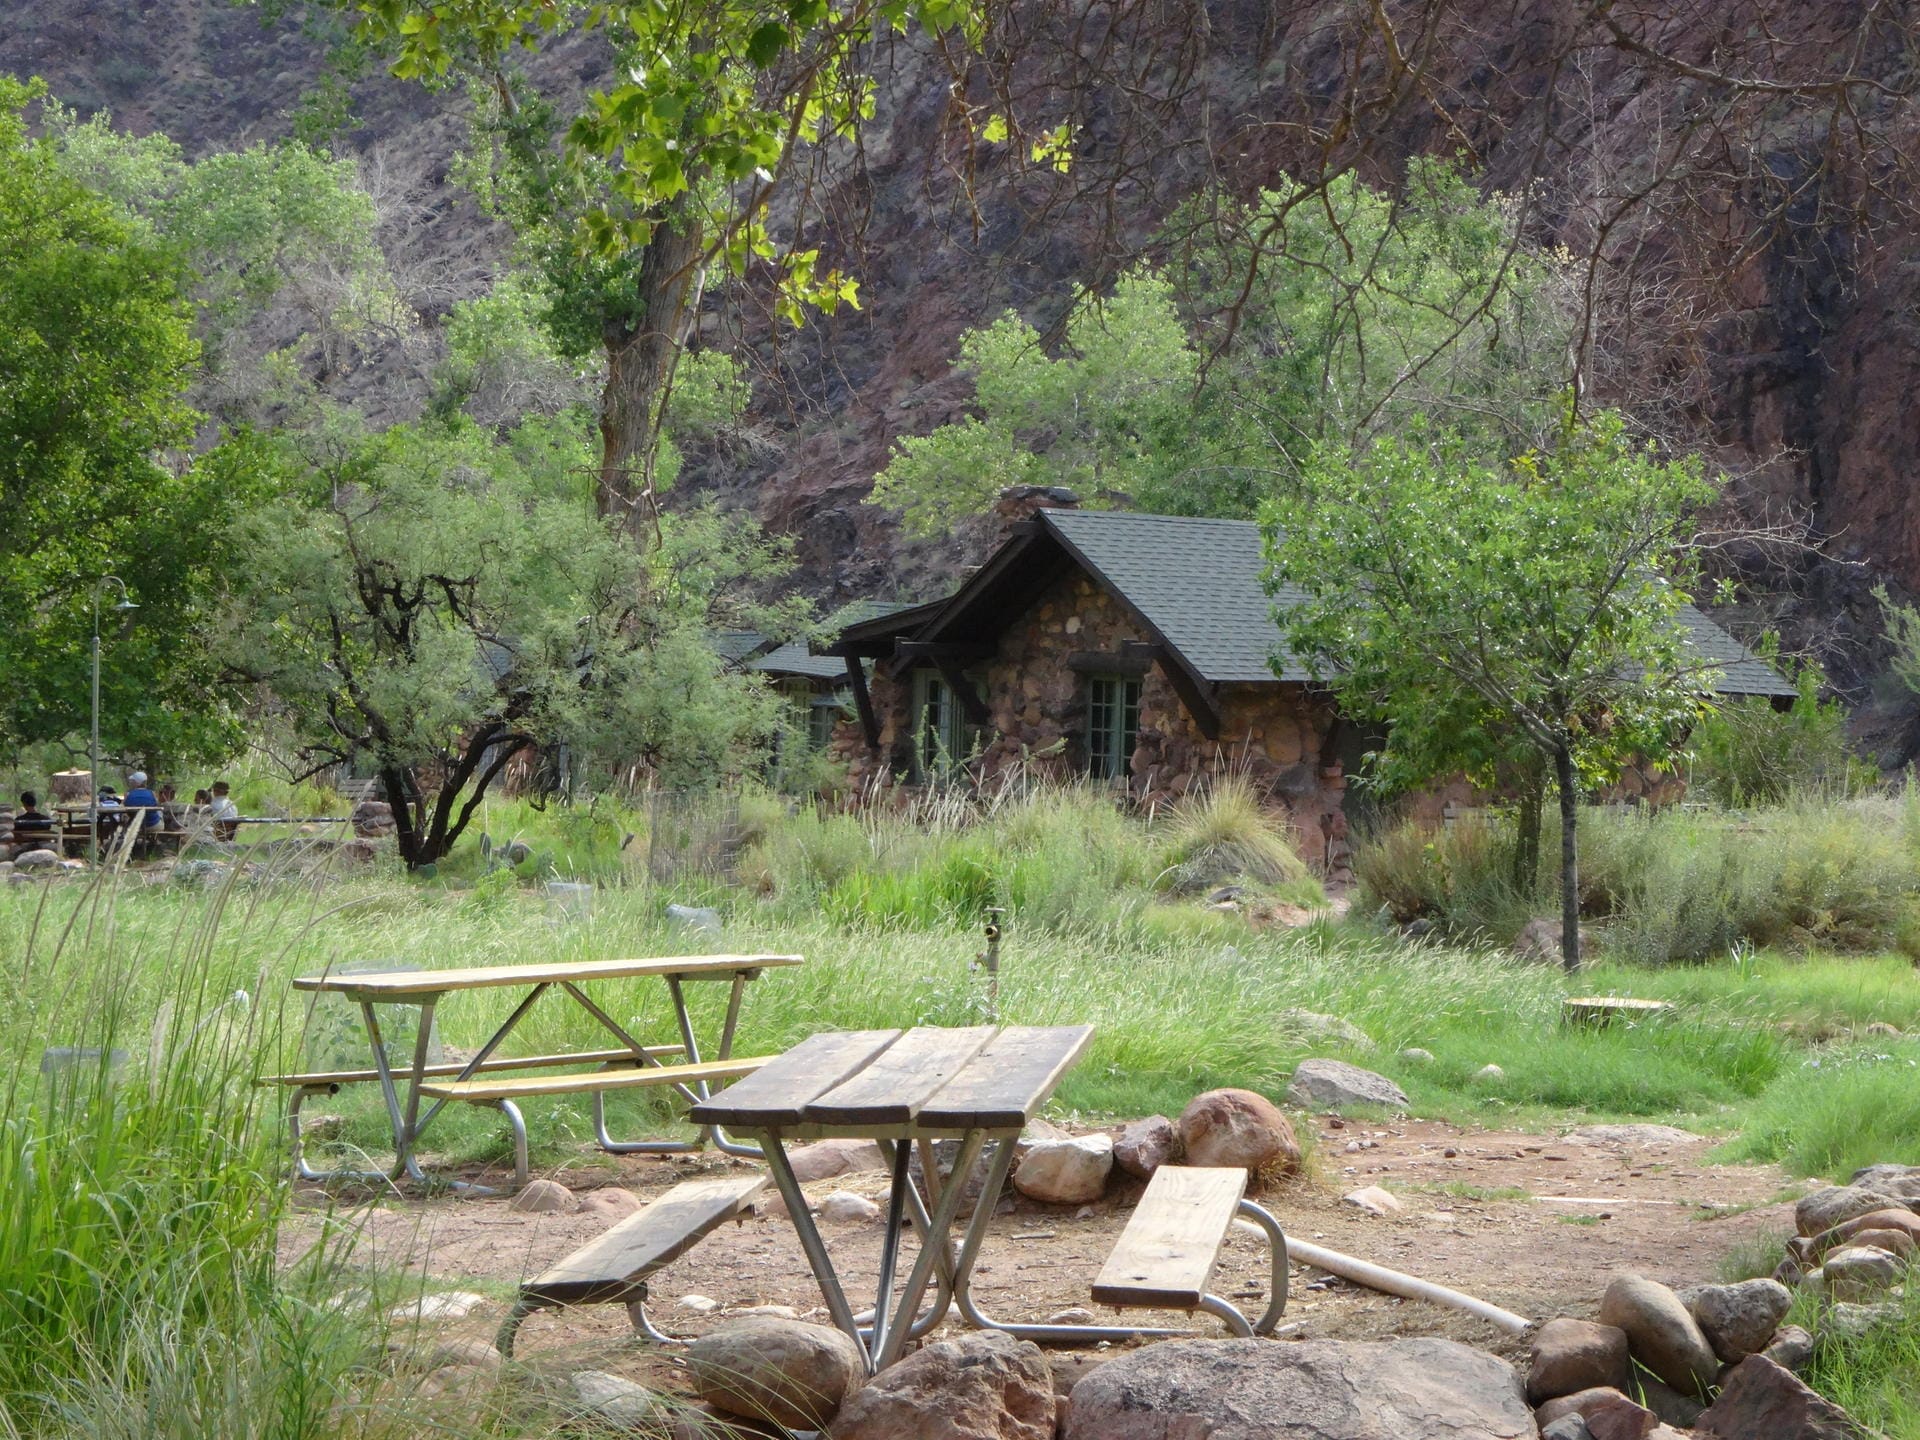 Hütte auf der "Phantom Ranch": Die Reservierungen für die "Phantom Ranch" werden wegen der großen Nachfrage per Losverfahren vergeben.